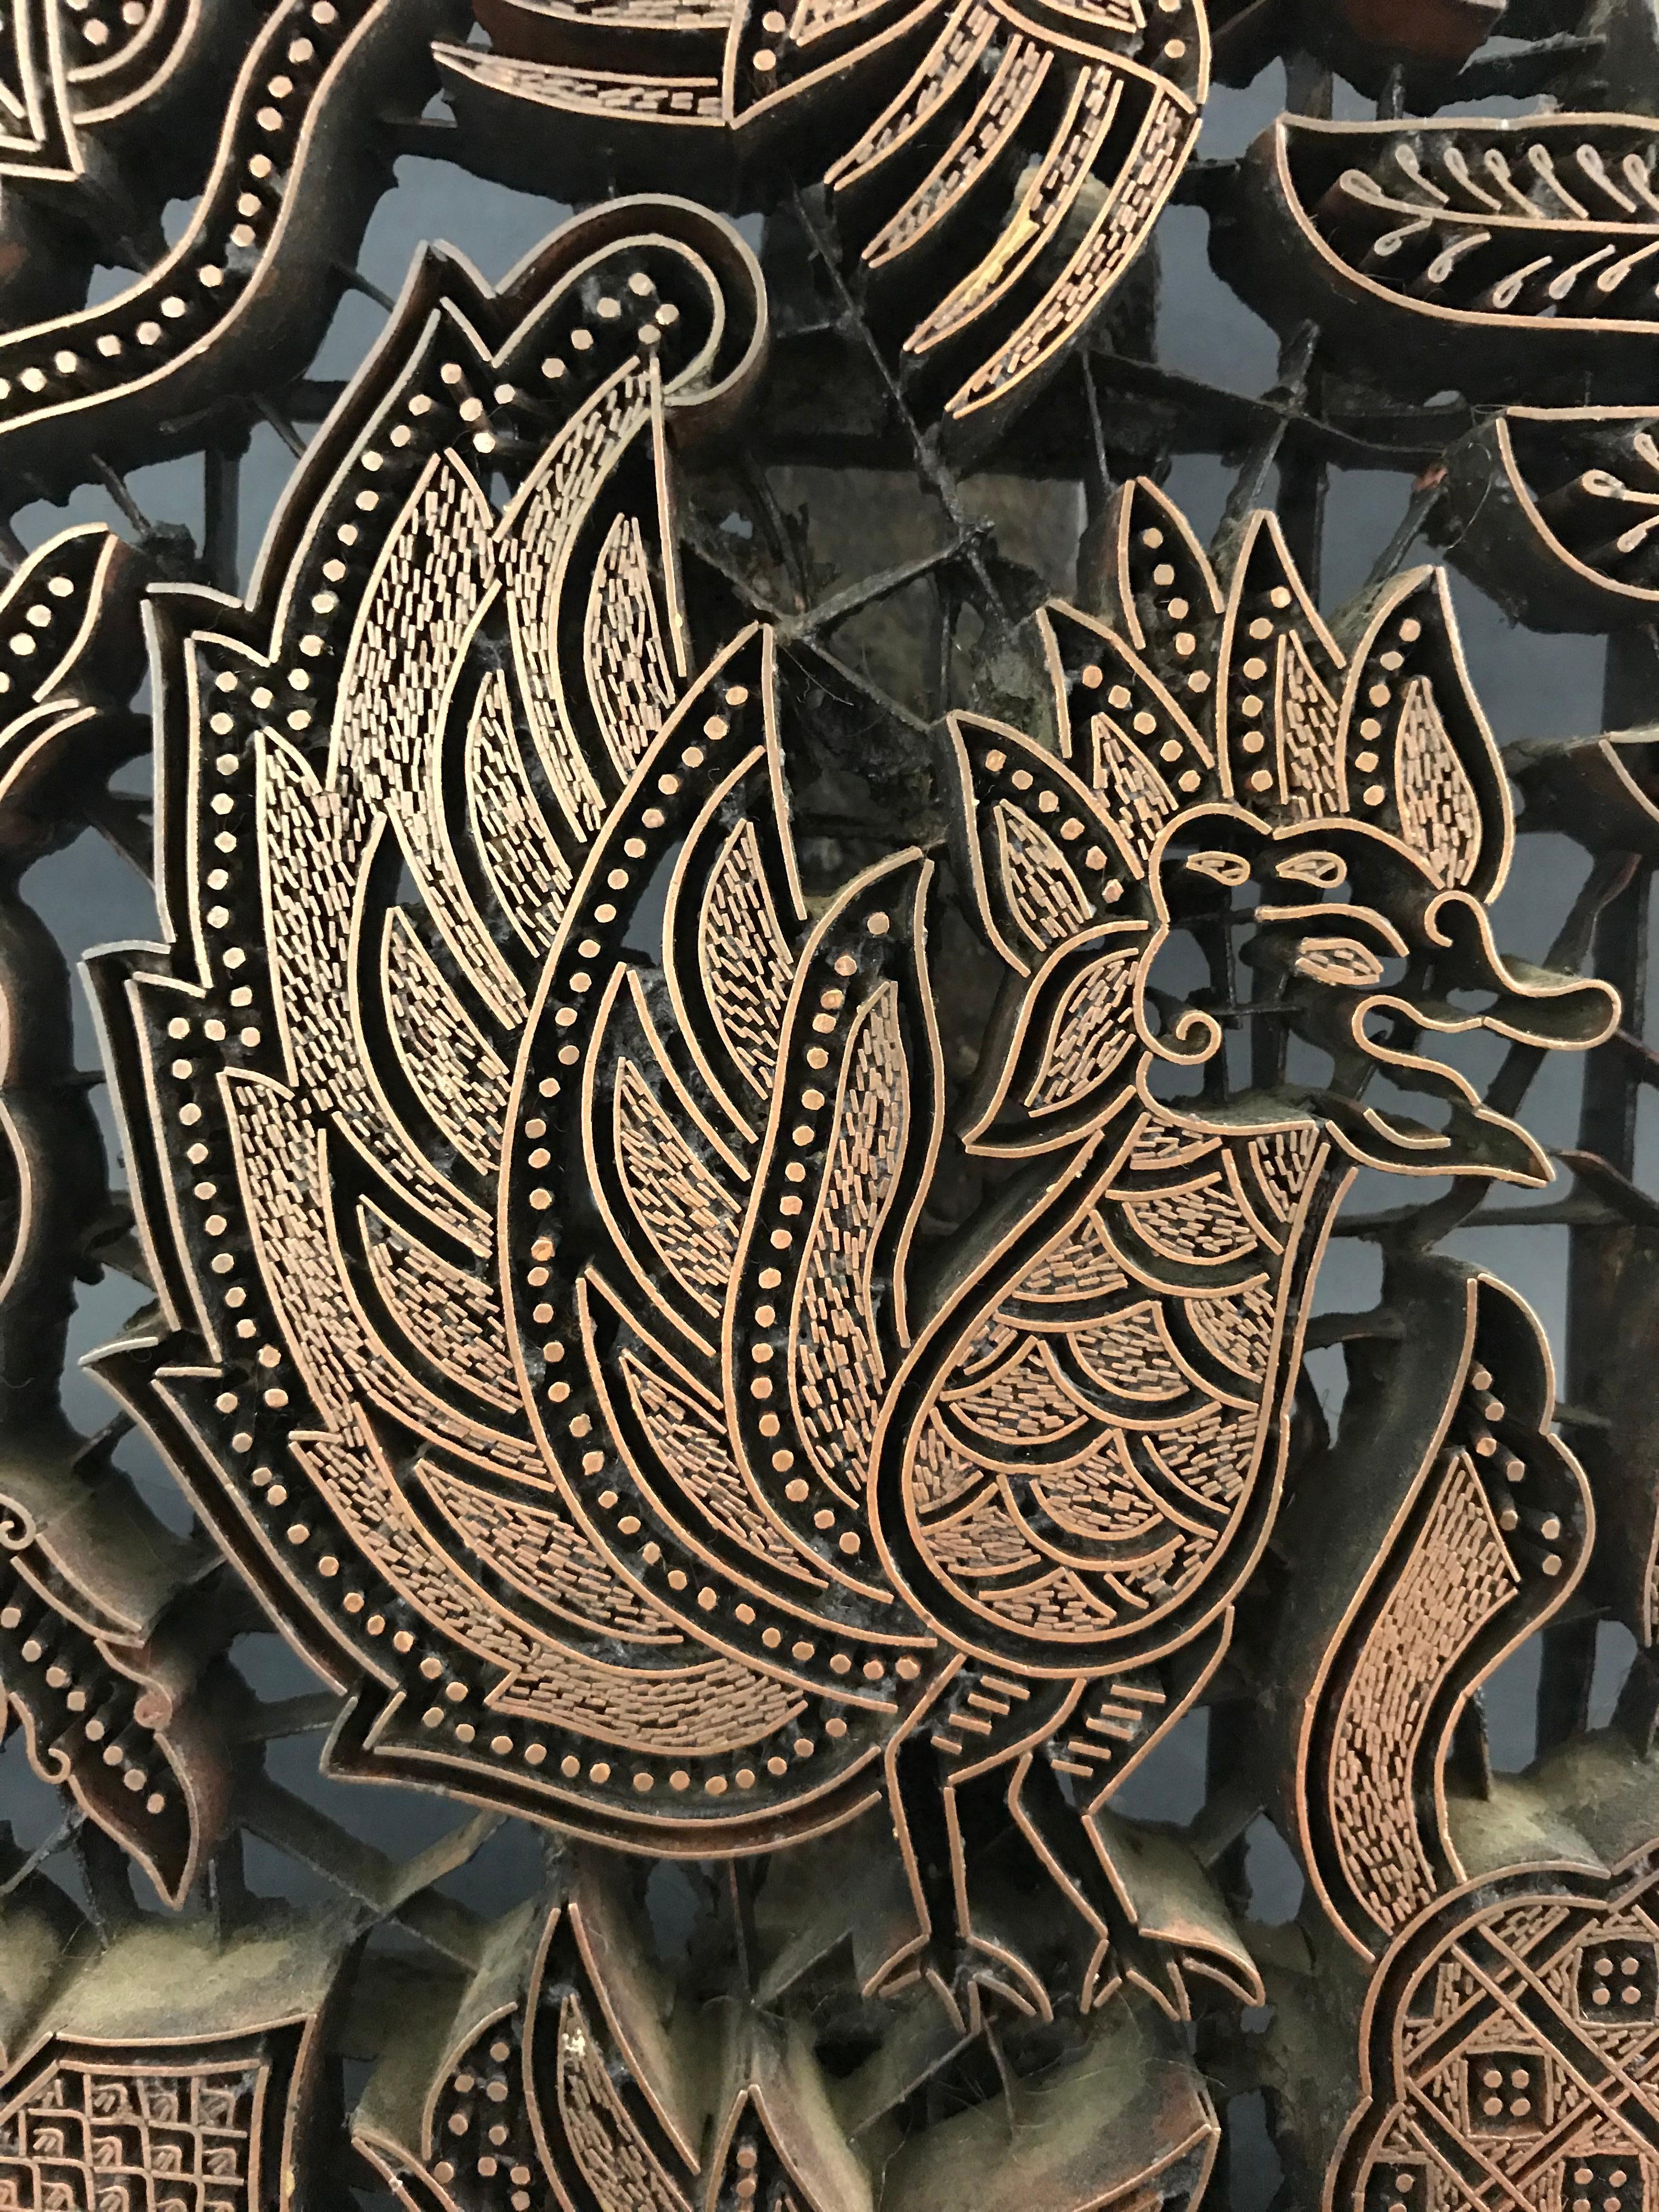 Timbre composé d'un ensemble de petites plaques de cuivre soudées formant un motif d'oiseau. Ces timbres devaient être imprimés sur la draperie.
Travail indien, vers 1900.